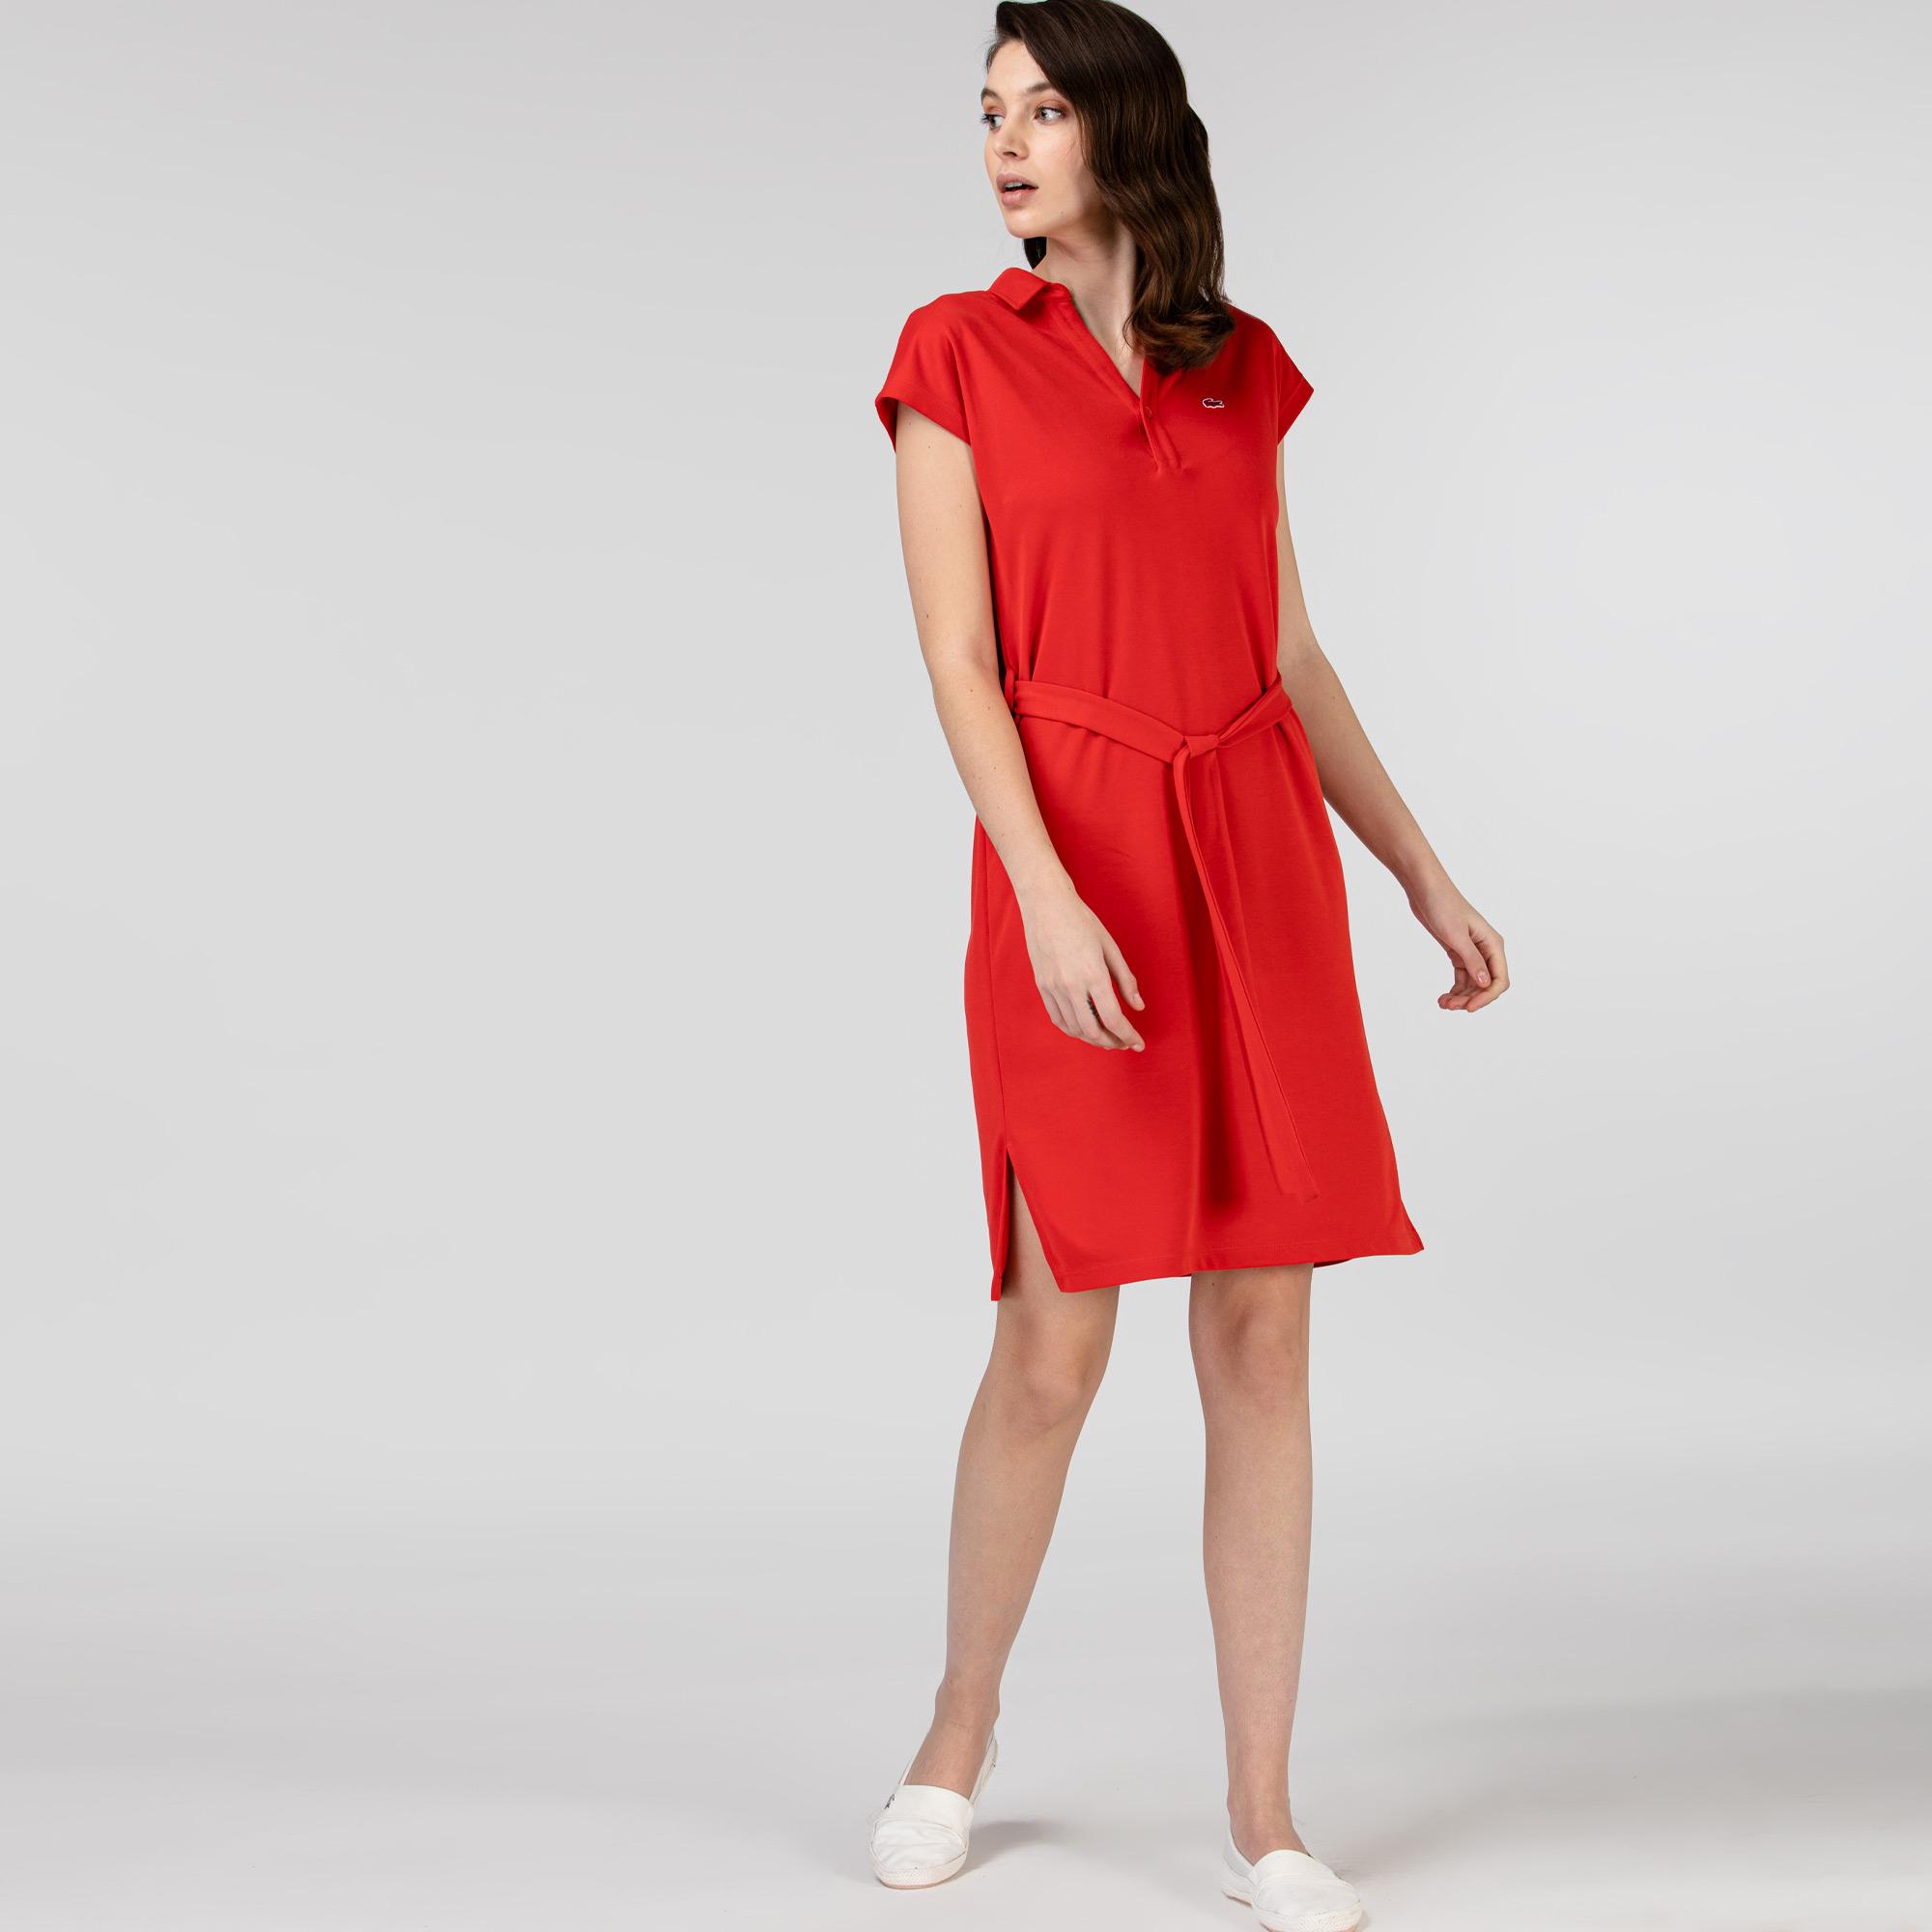 Lacoste Kadın Kısa Kollu Kırmızı Elbise. 1